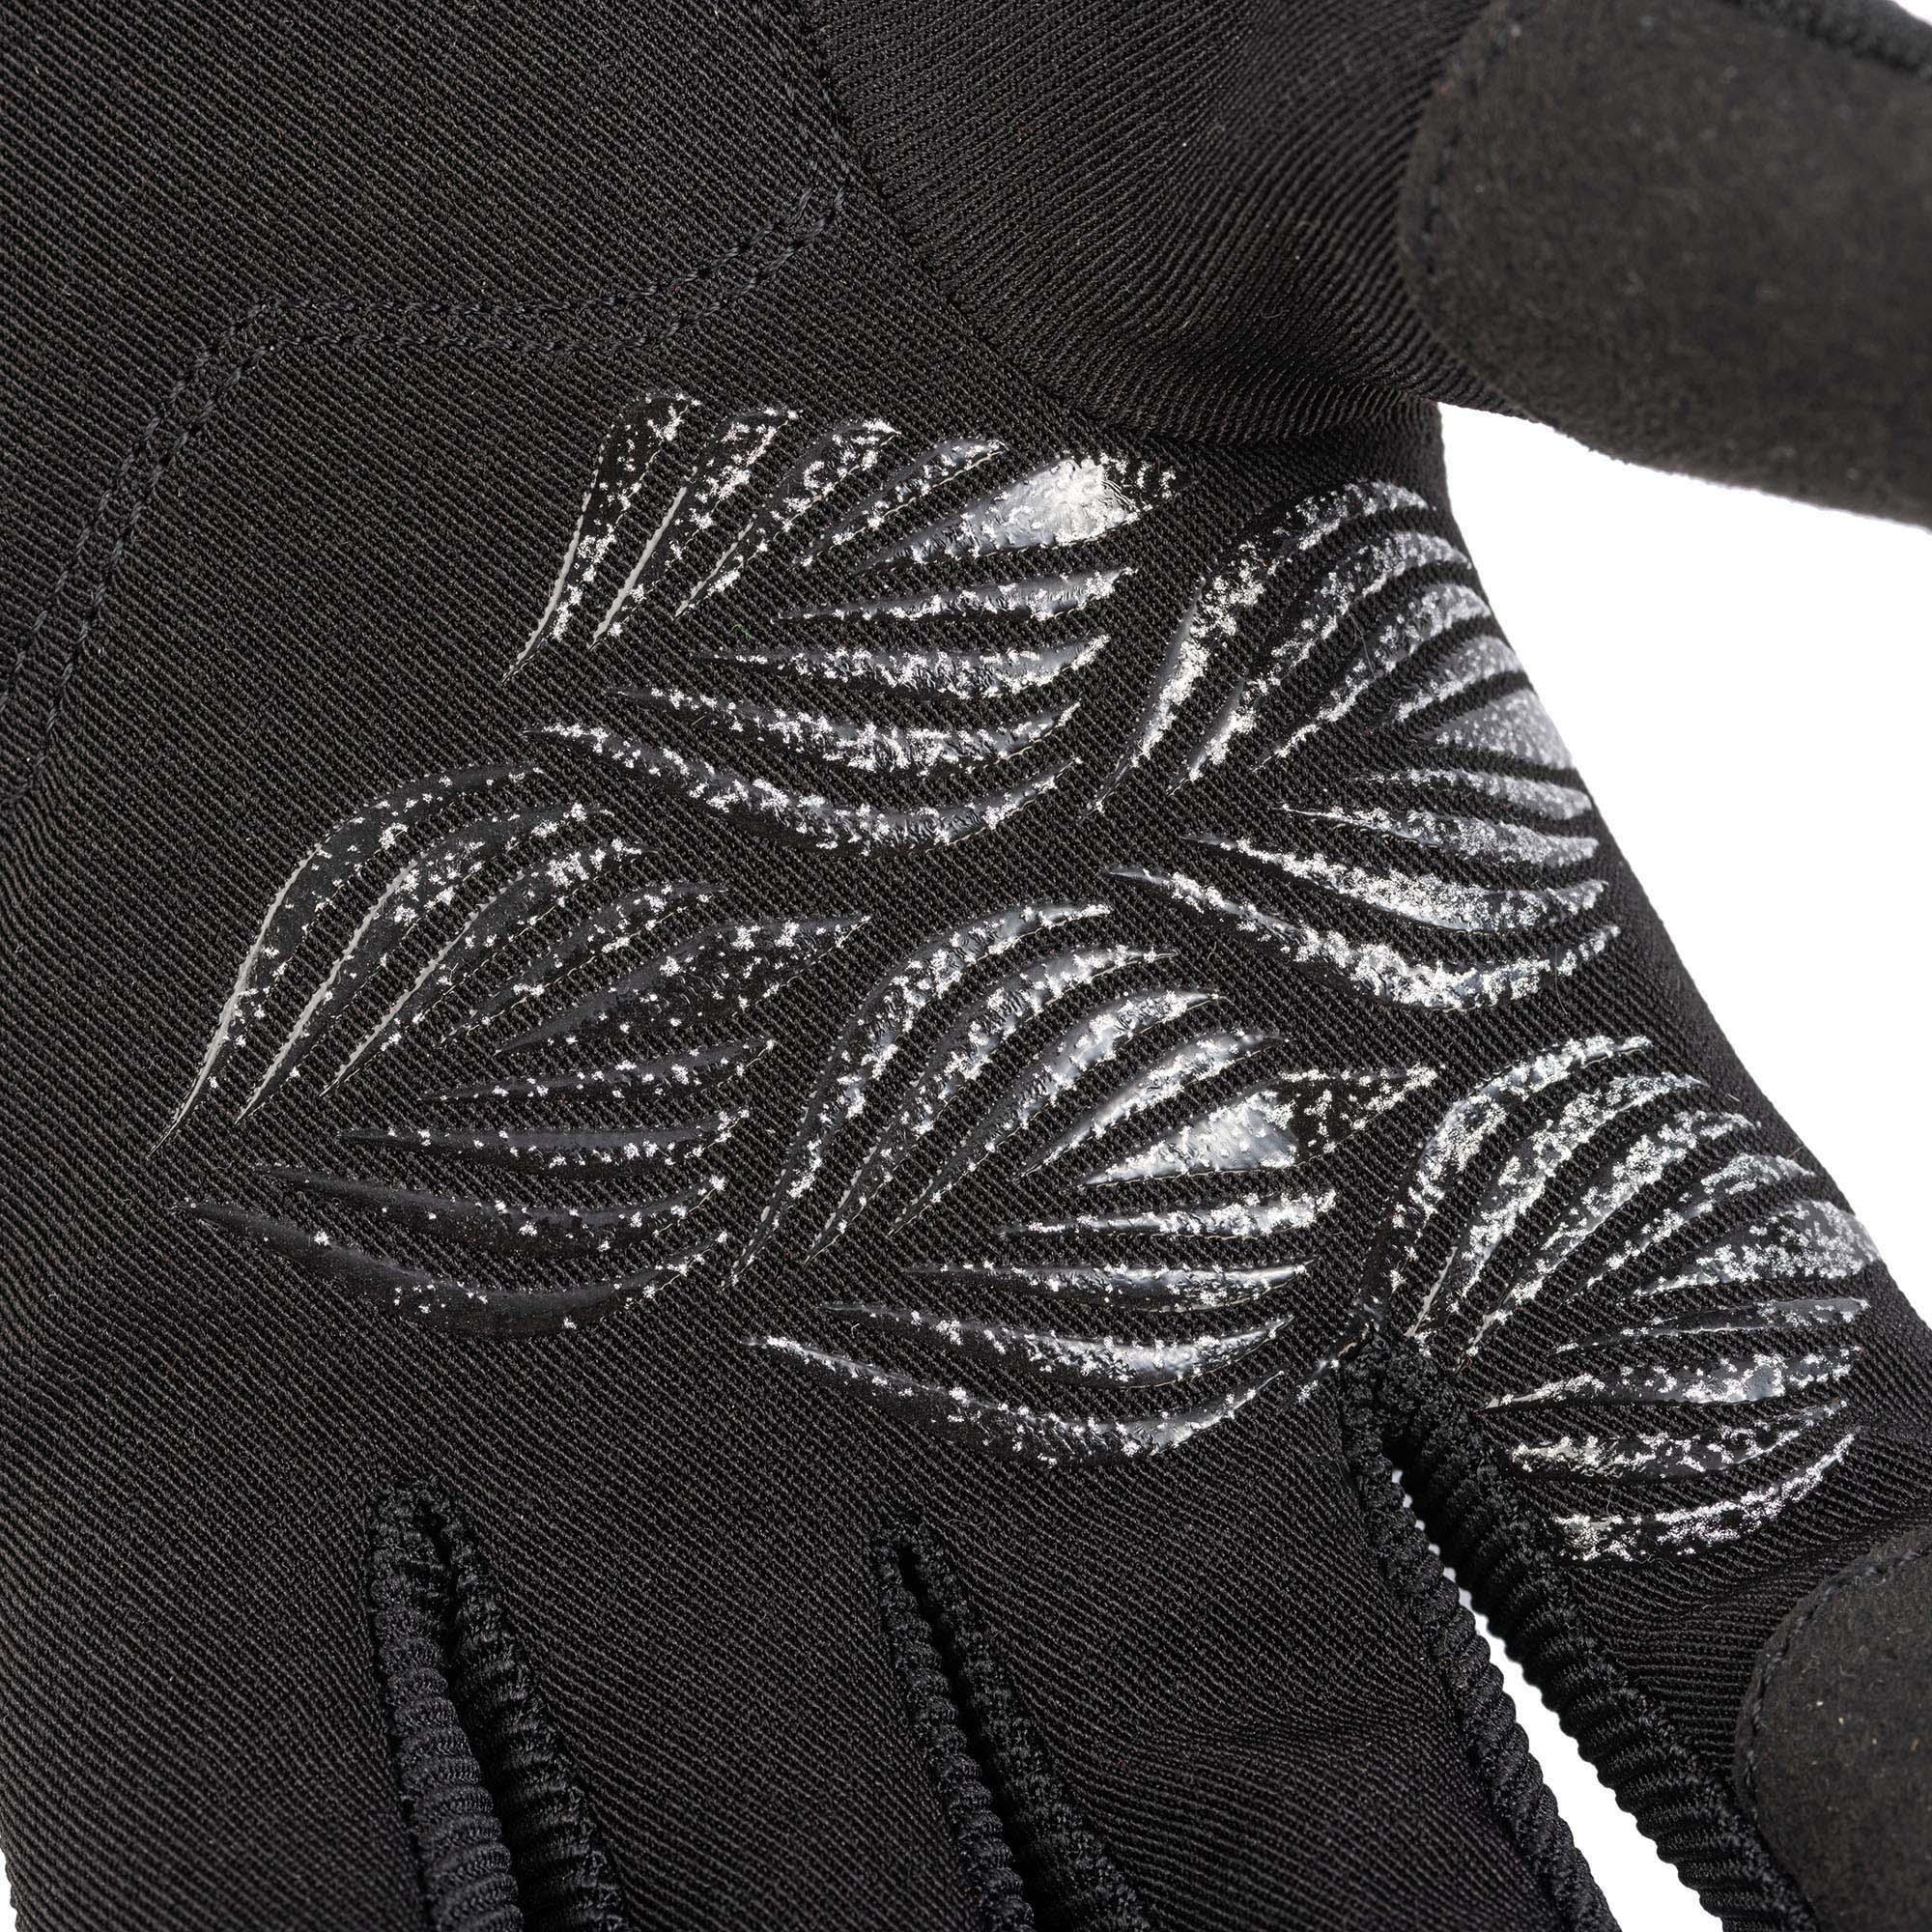 New Mary Gloves Glitter Black Tucano Urbano